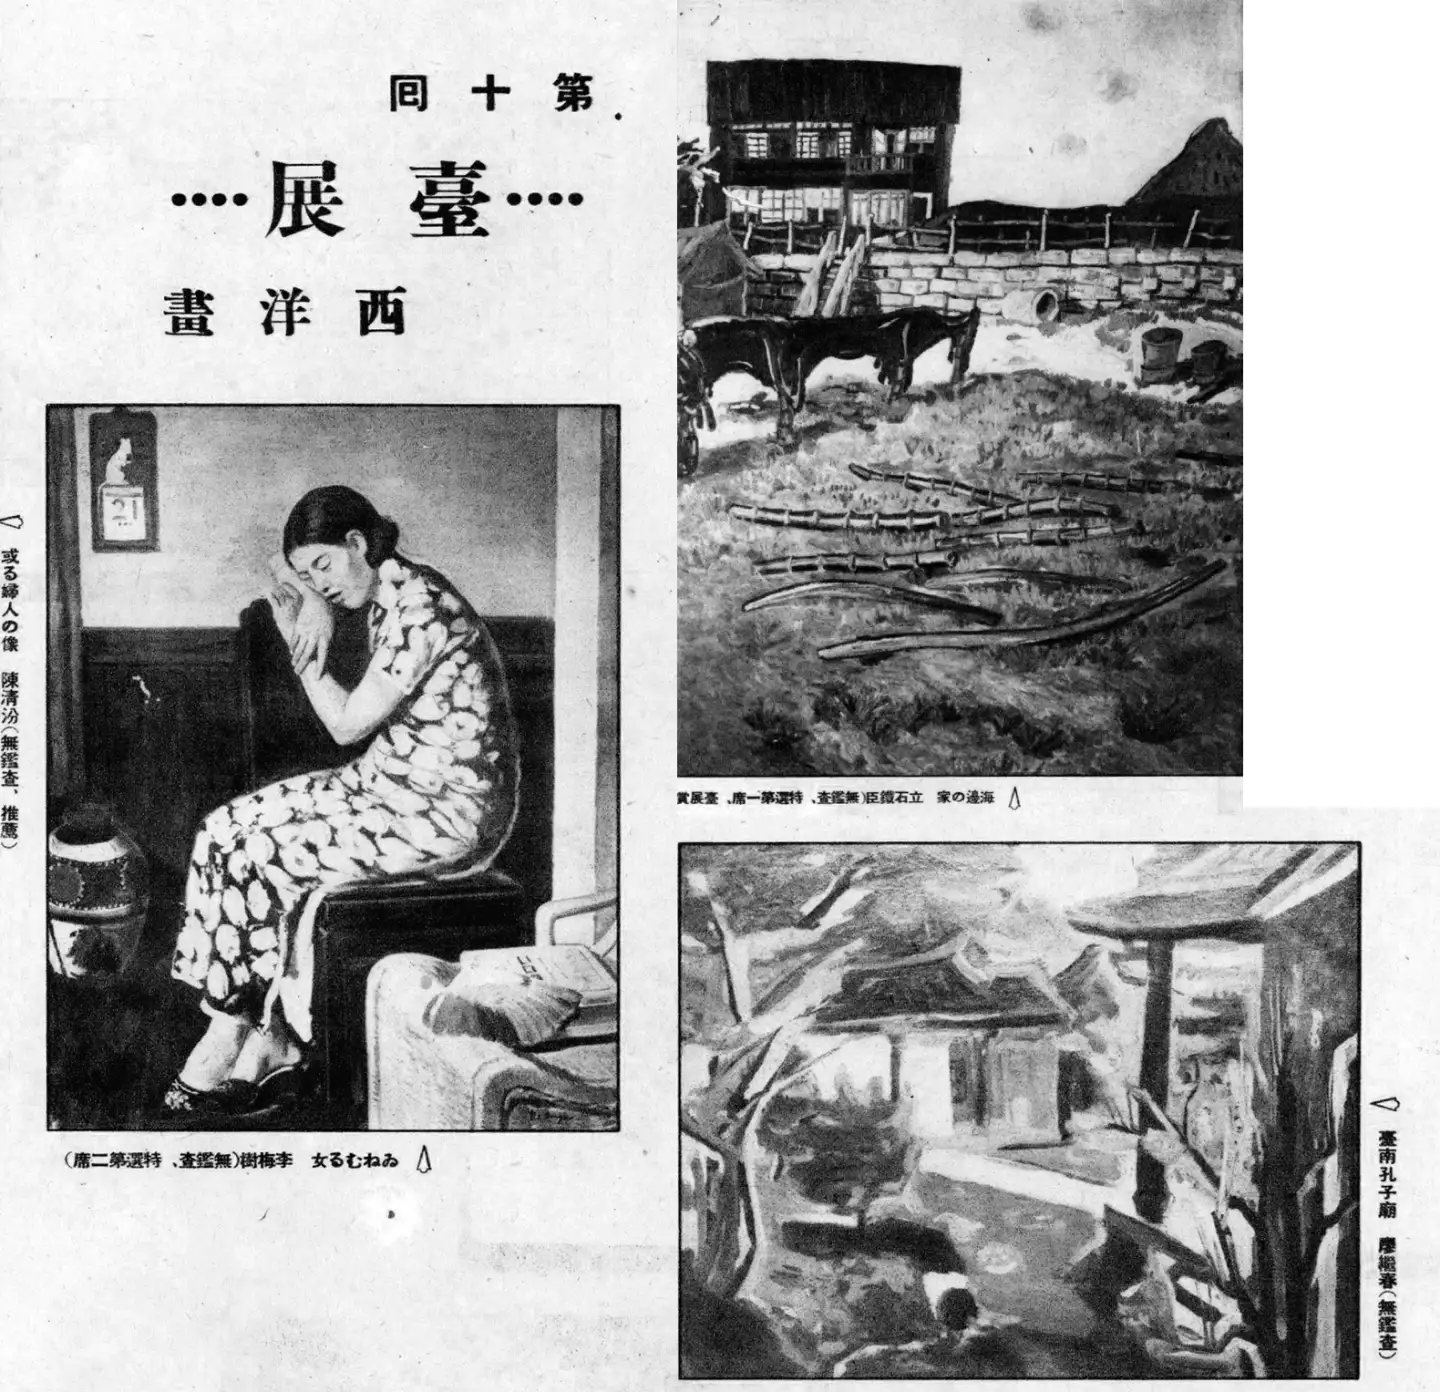 臺展西洋畫參展作品，臺灣畫家如李梅樹、廖繼春等亦榜上有名。第 7 卷第 11 號（1936. 11.15 ），頁16。